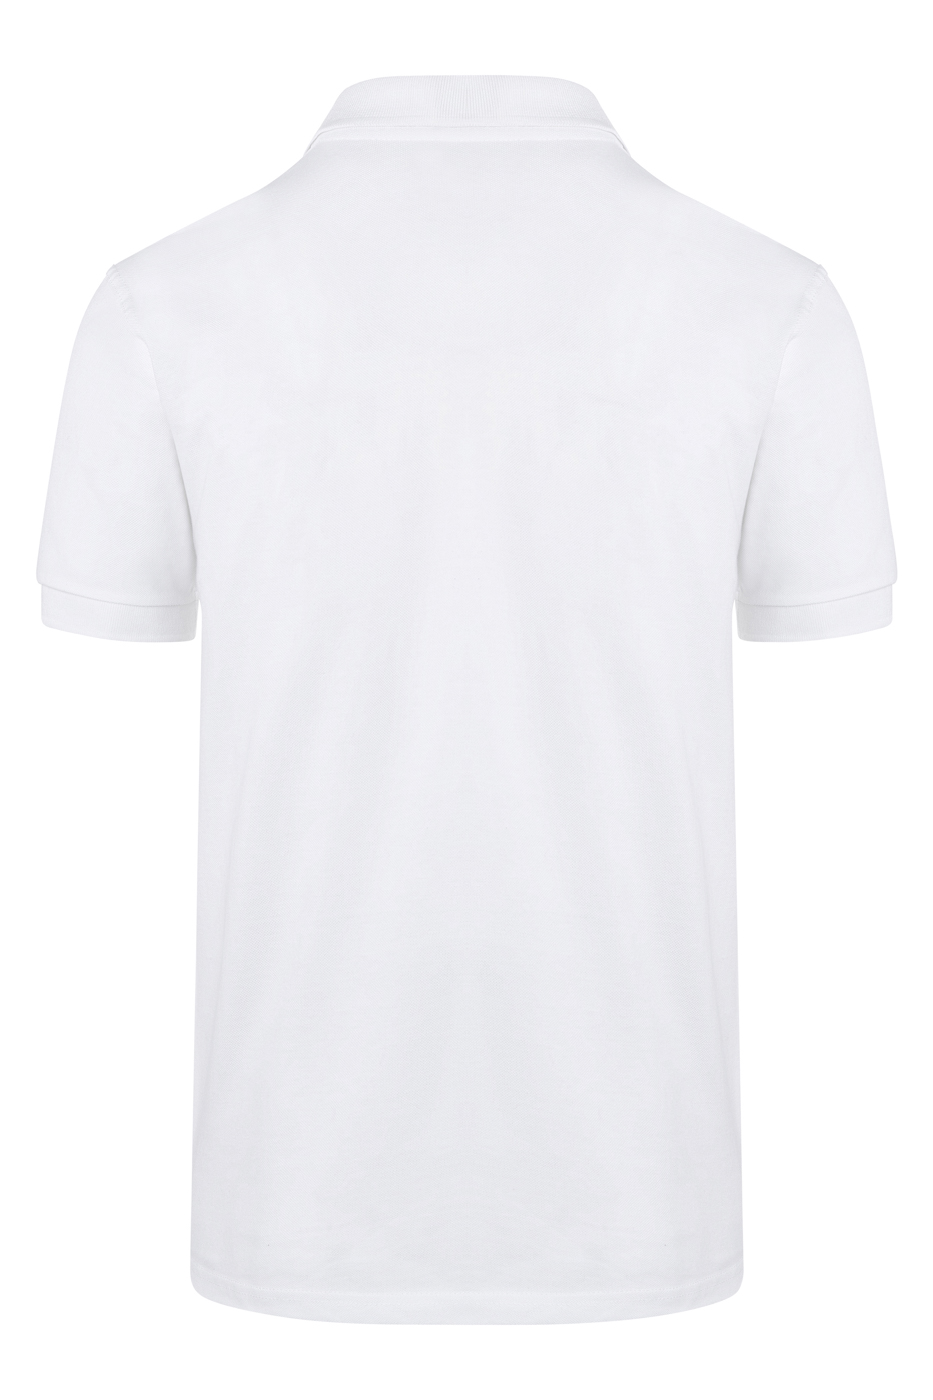 Herren Workwear Poloshirt Basic - Größe: S